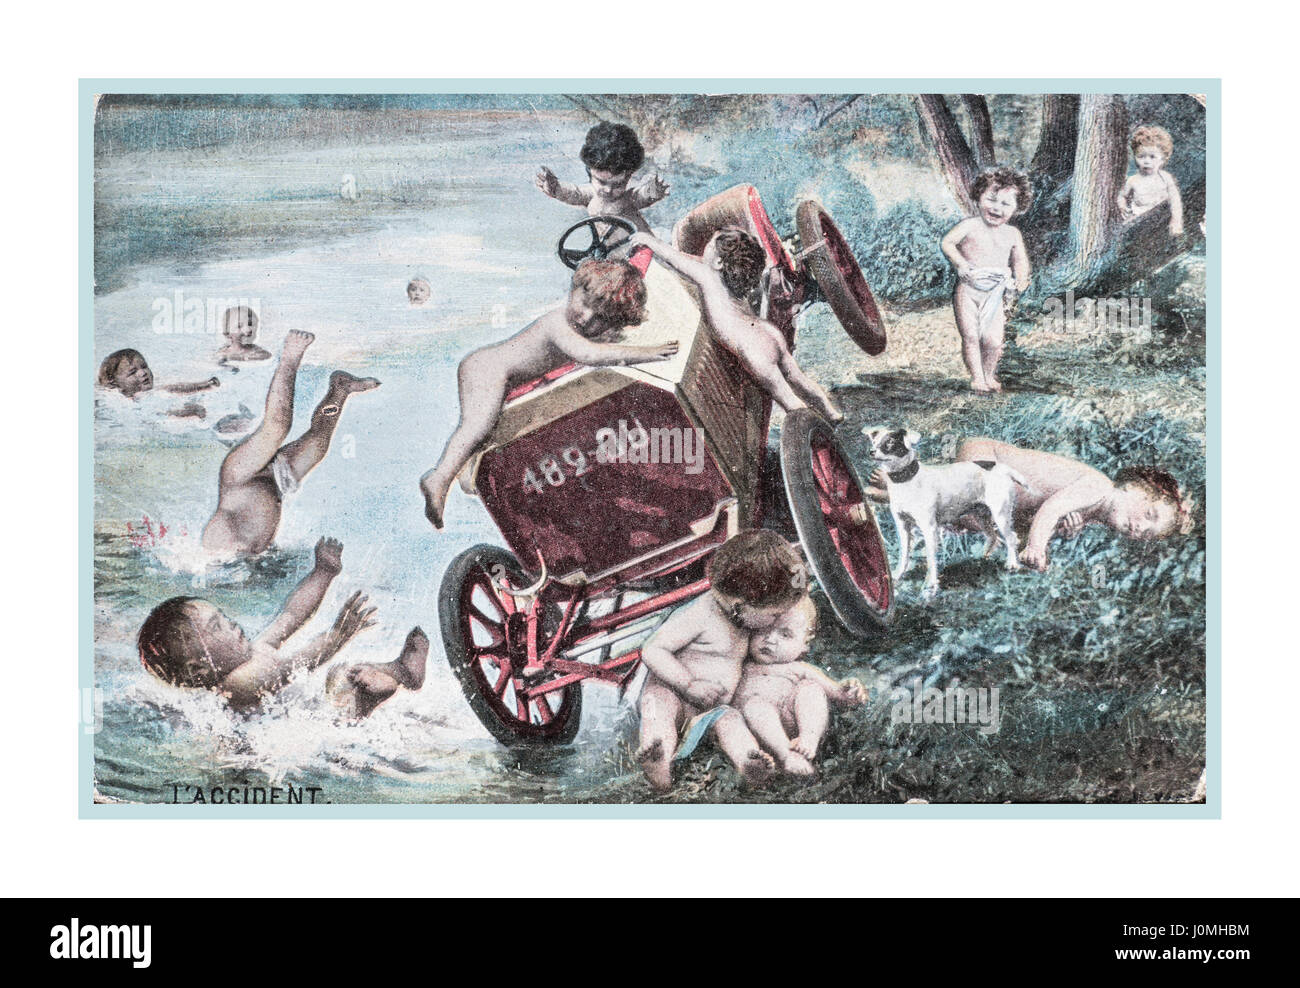 Guerra Mundial 1 Vintage fantasía postal francés, de fecha 23 de abril de 1917 mostrando los querubines involucrado en un accidente automovilístico francés.. Enviado por un soldado británico sirviendo desde el frente occidental en Francia Foto de stock